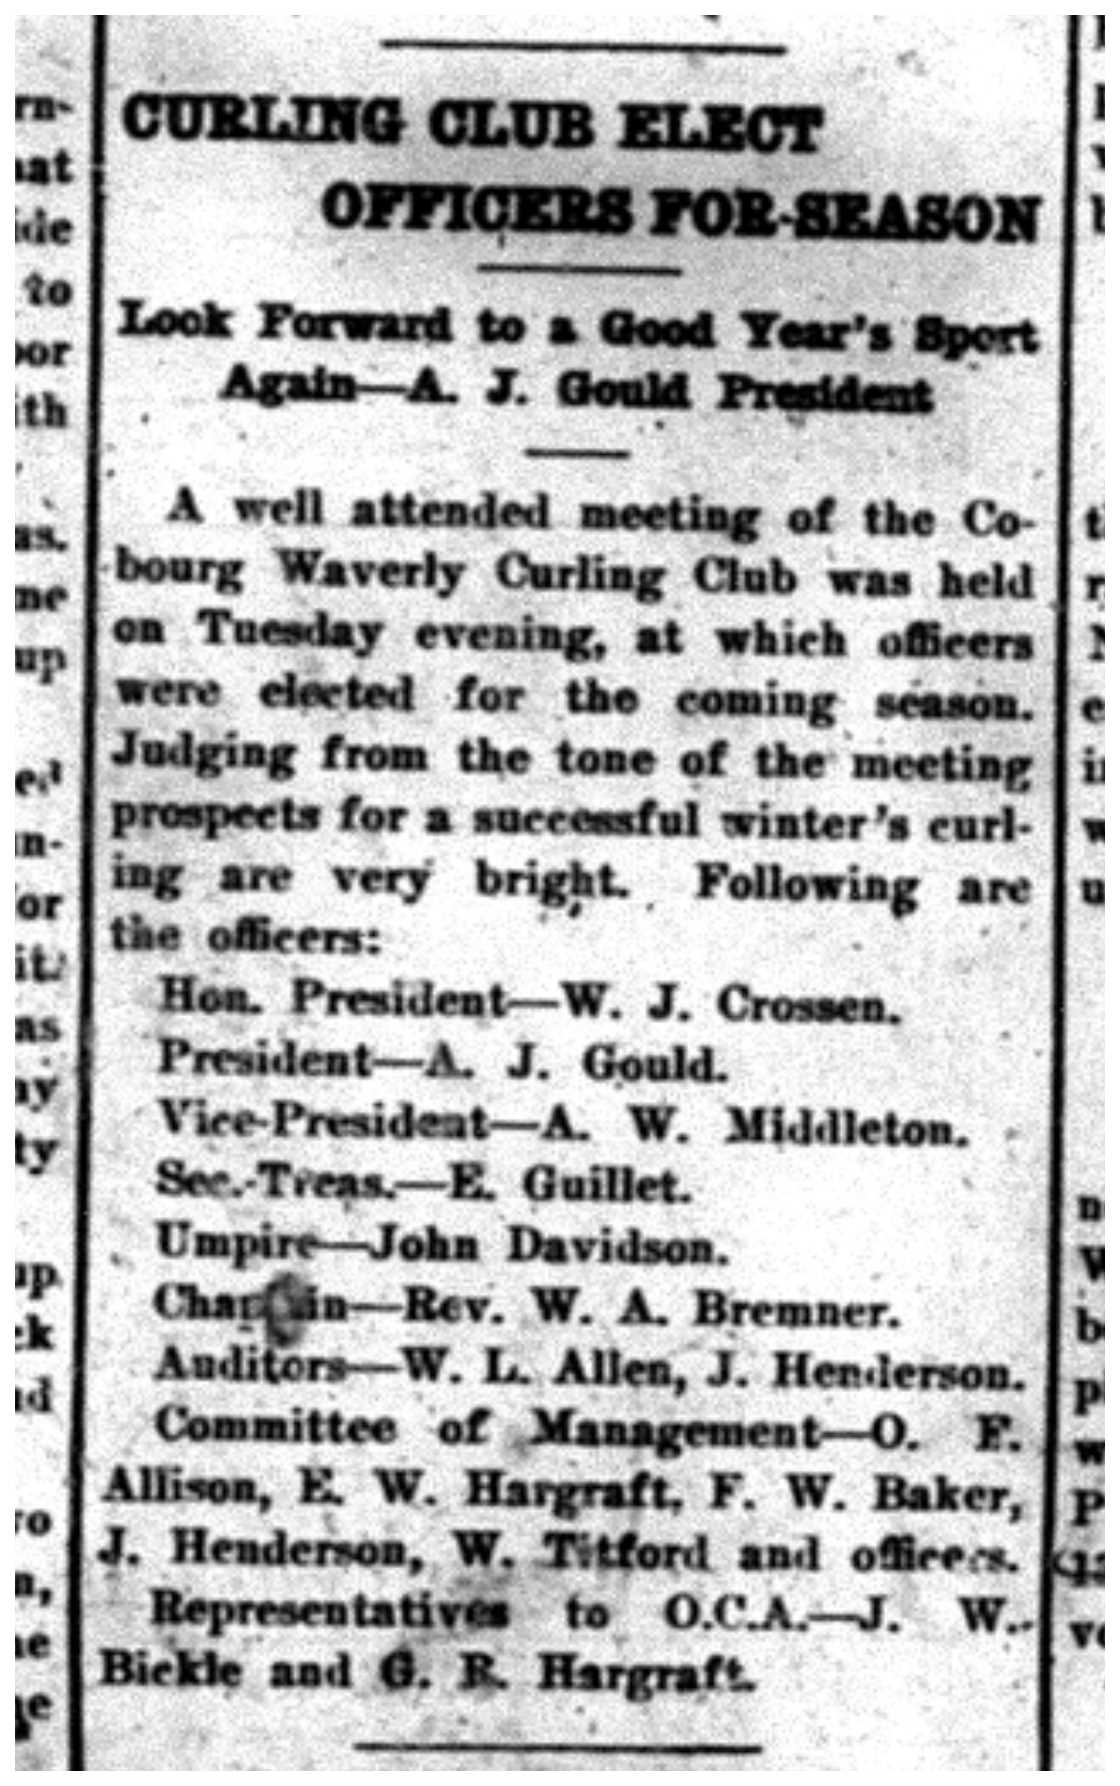 1918-10-11 Curling